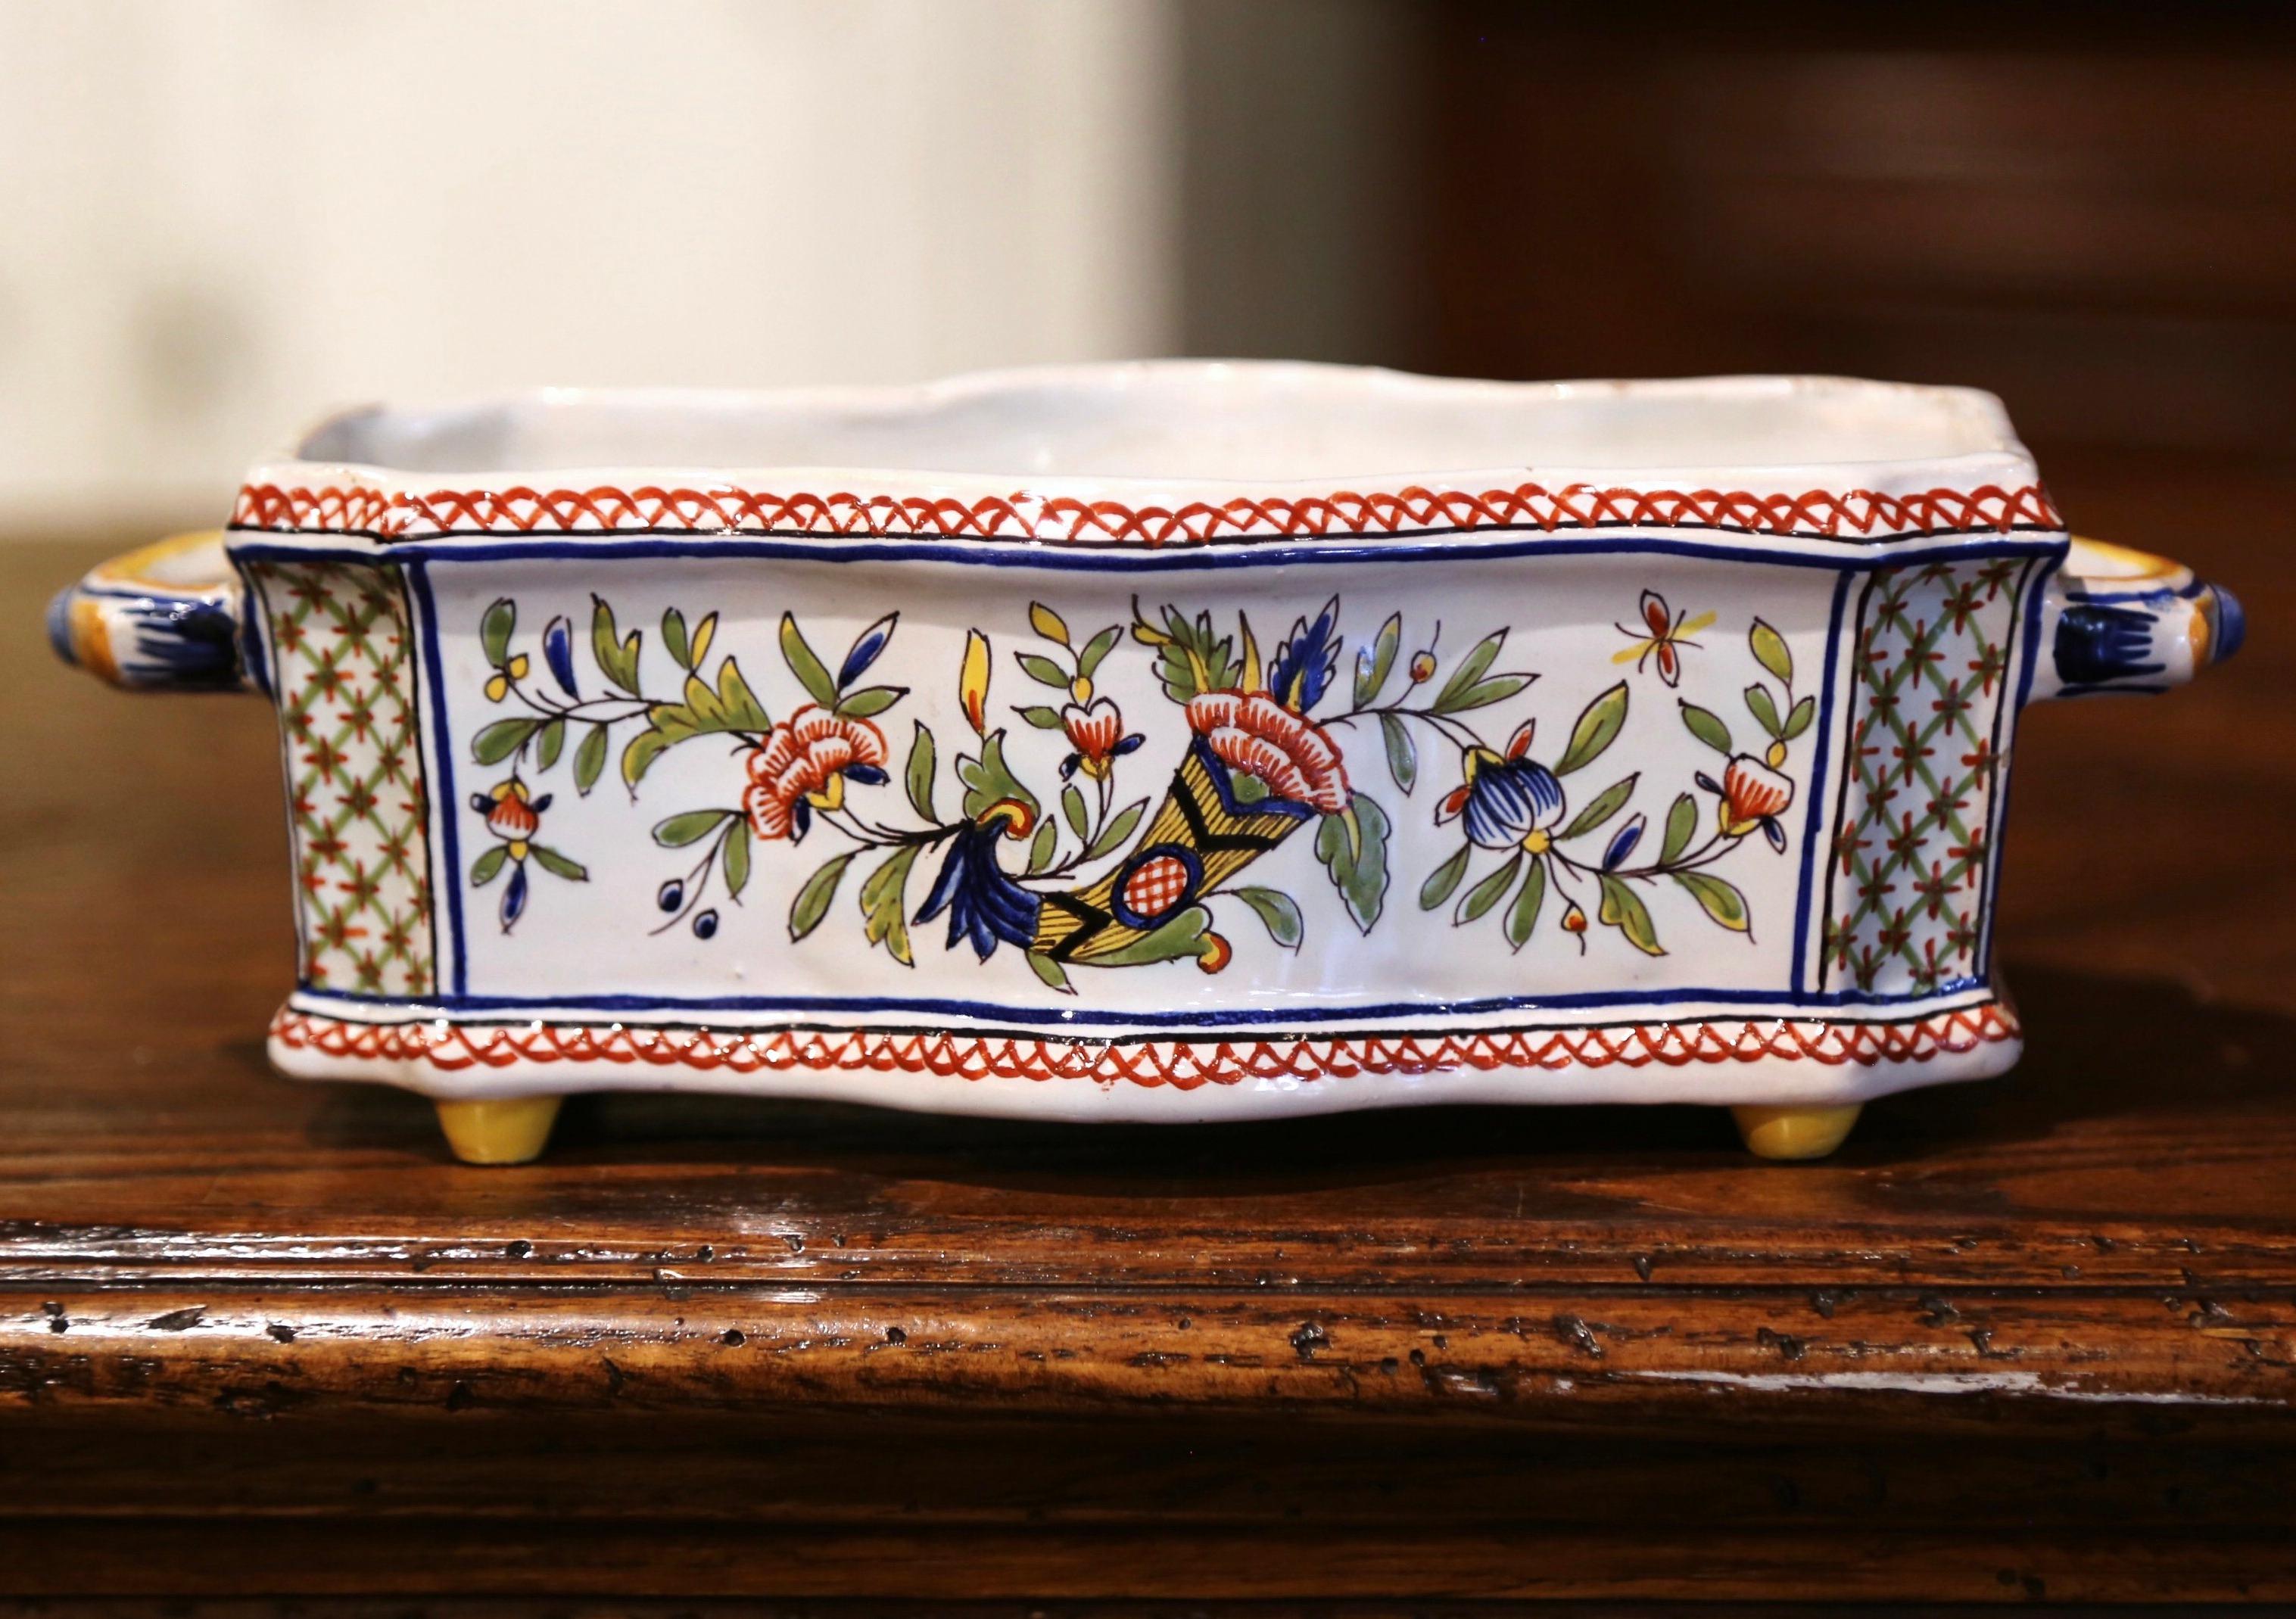 Dekorieren Sie einen Kaminsims, einen Tisch oder ein Buffet mit diesem farbenfrohen antiken Pflanzgefäß. Die um 1920 in der Normandie (Frankreich) gefertigte rechteckige Keramik-Jardiniere steht auf kleinen Füßen und ist mit seitlichen Henkeln